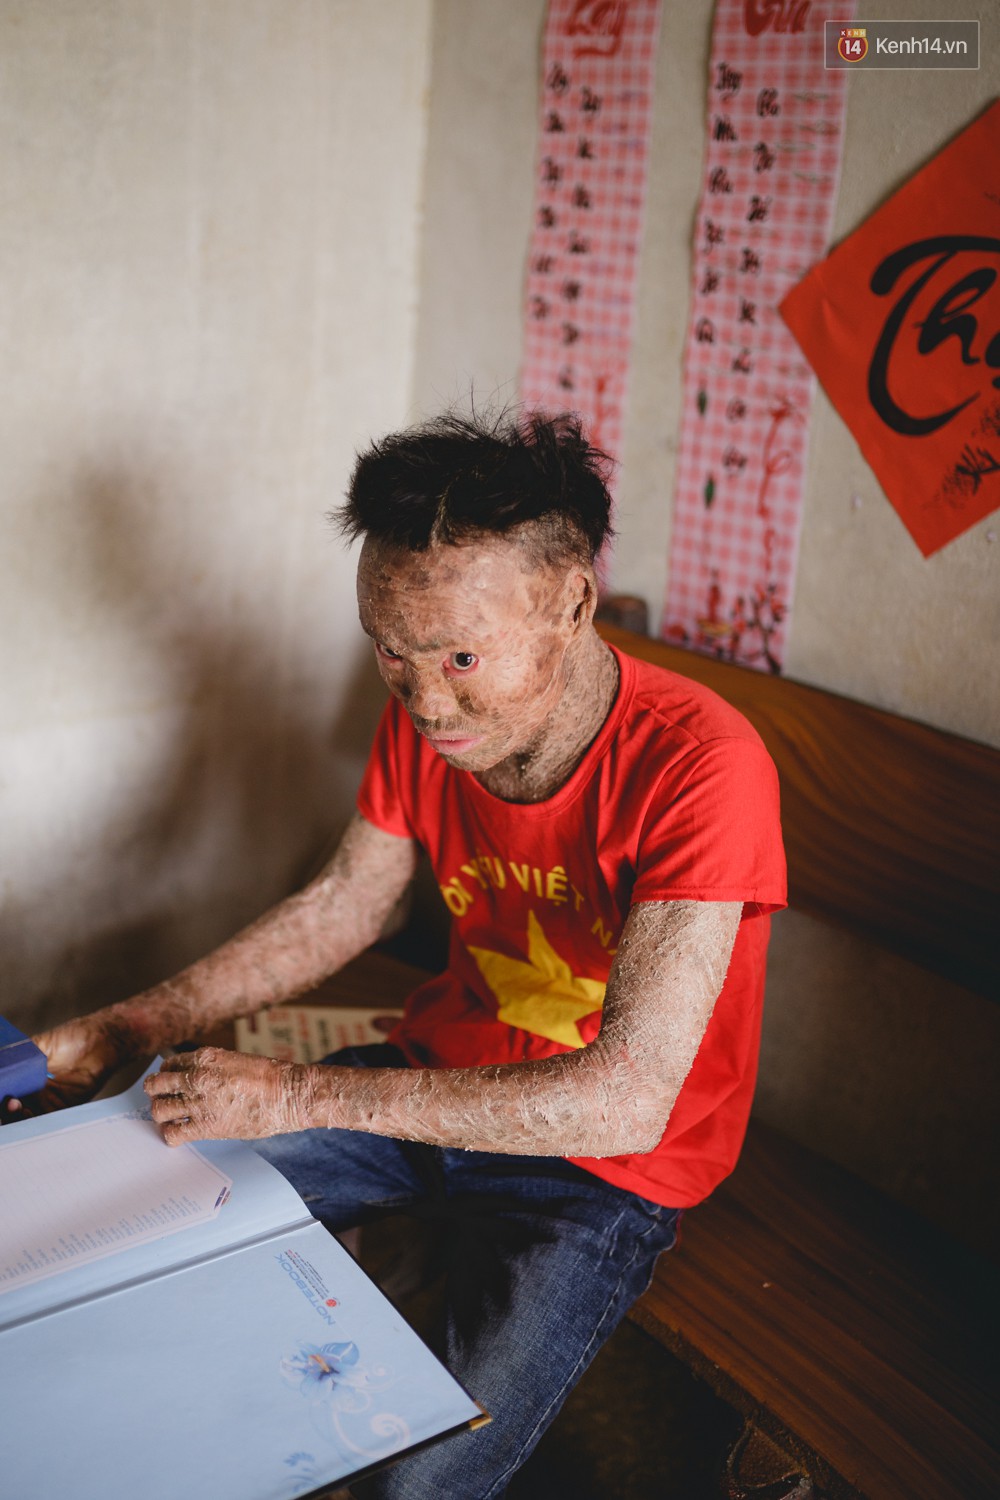 Chàng trai người cá lạc quan ở Hà Nội: Nhìn thấy bộ dạng của mình, nhiều người hỏi sao không chết đi, sống để làm gì? - Ảnh 1.